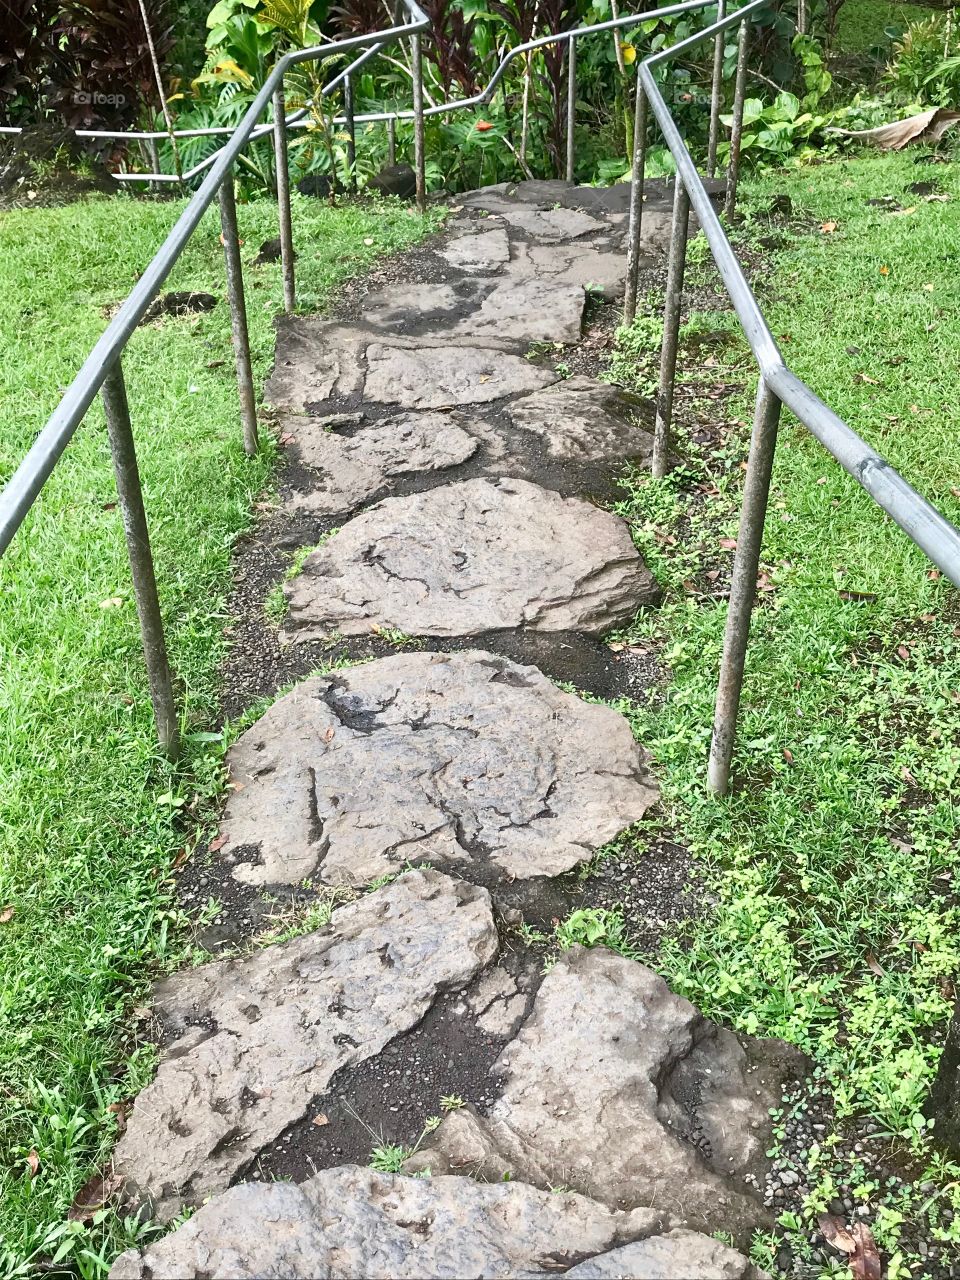 Stone paved path